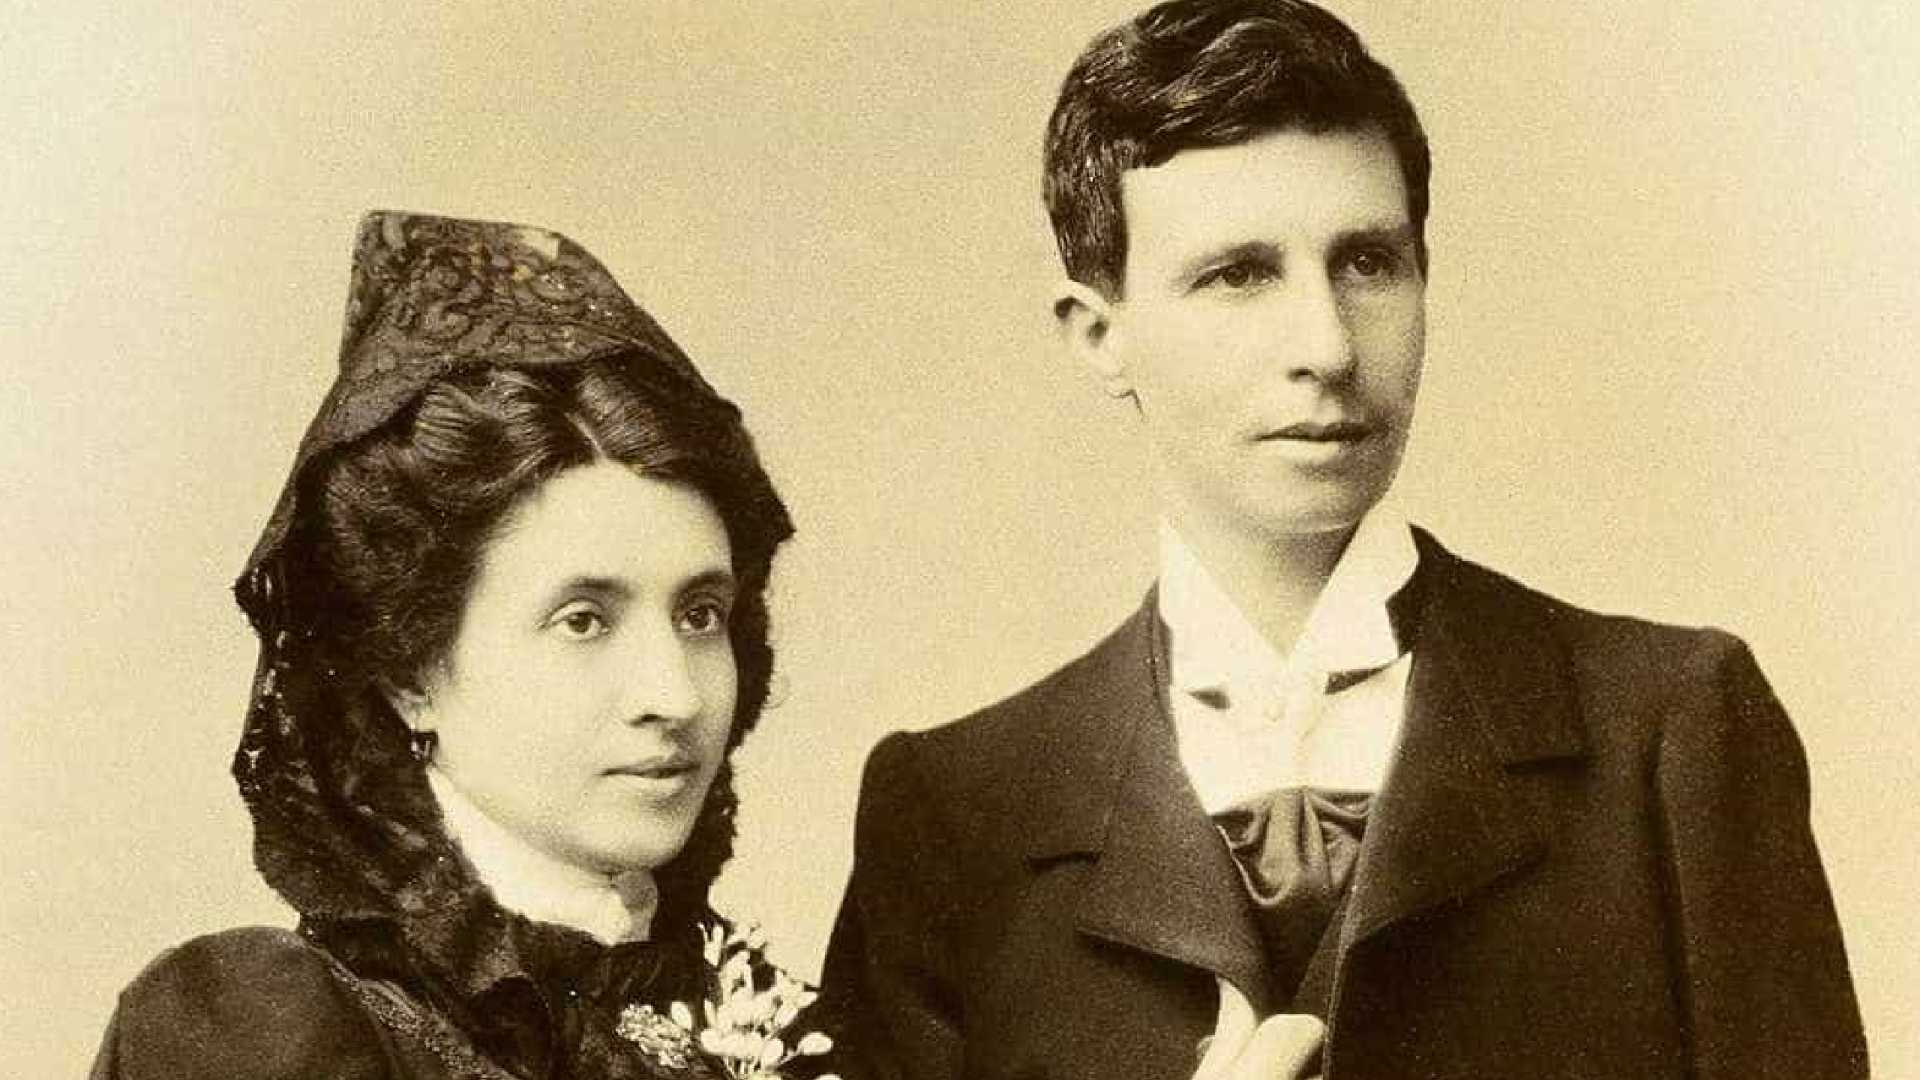 Casamento Marcela e Elisa na Espanha em 1901